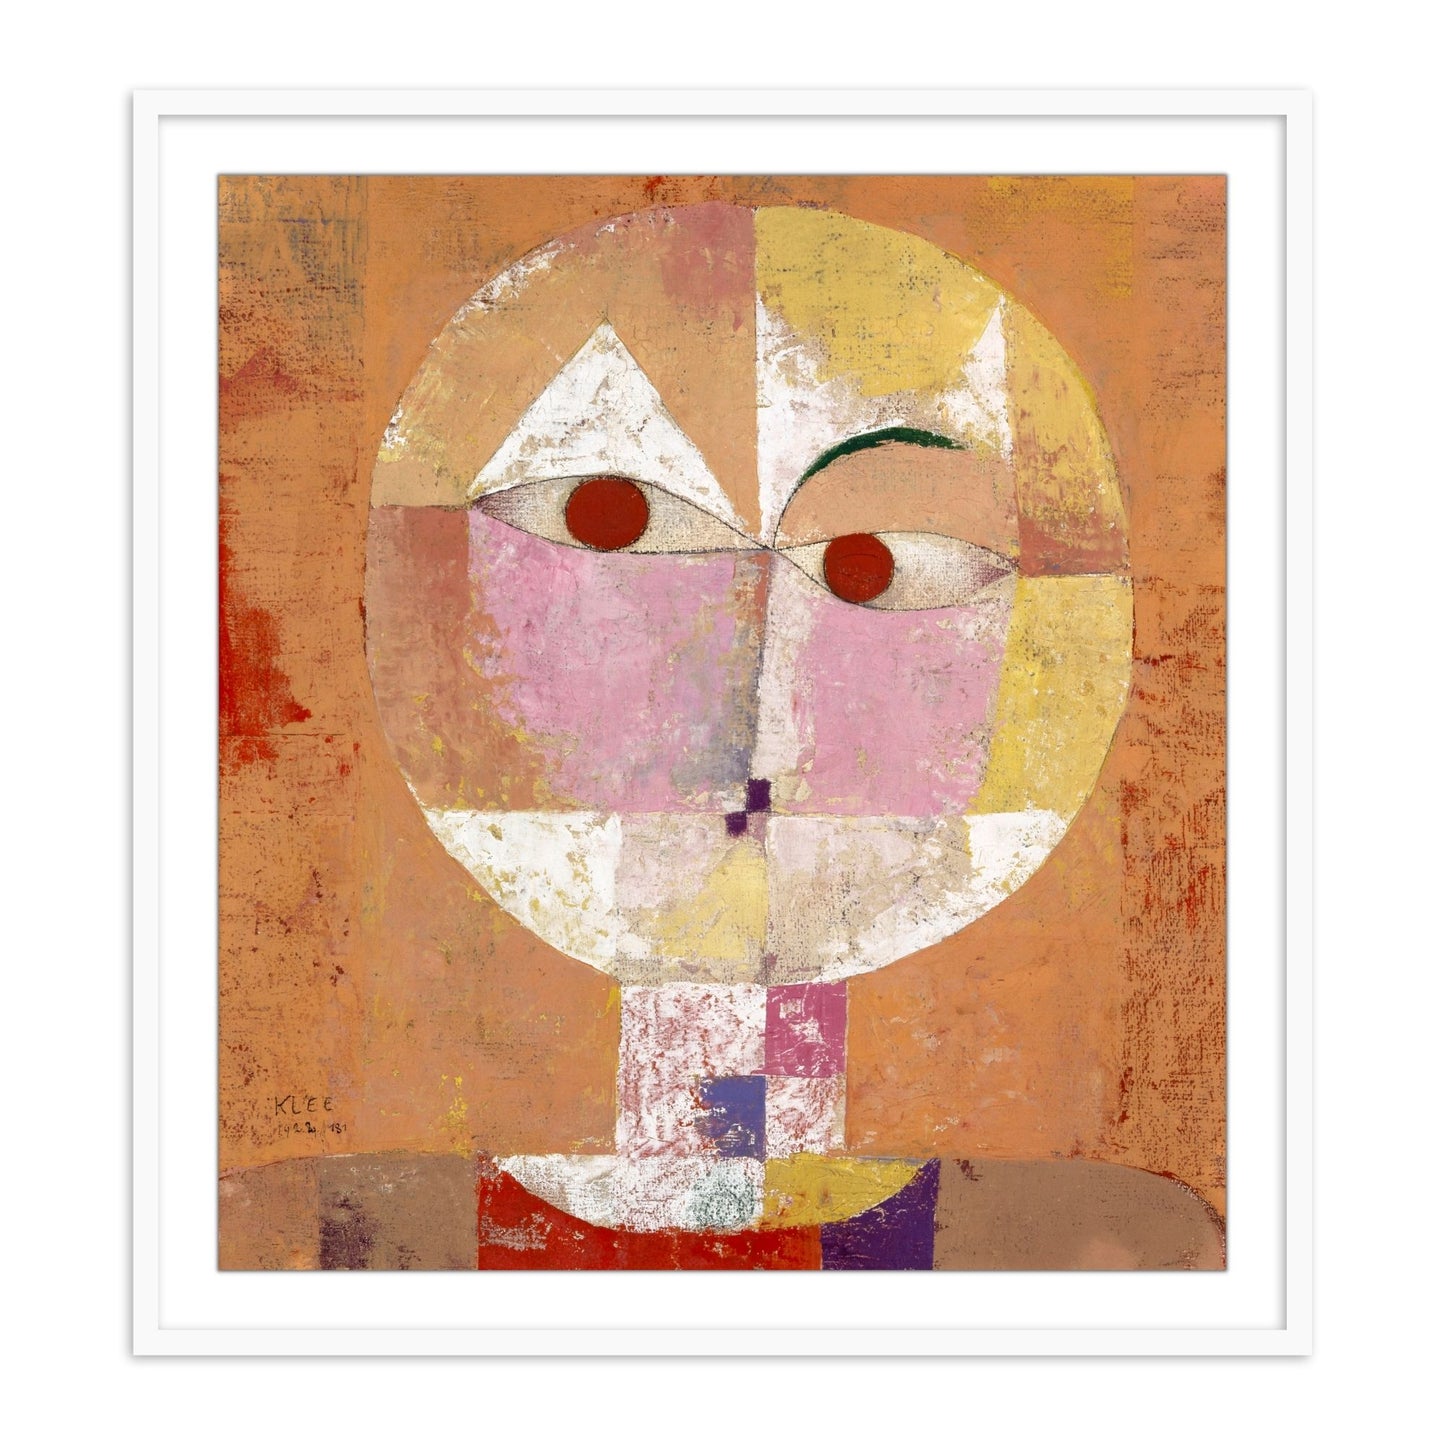 Senecio (Baldgreis) by Paul Klee